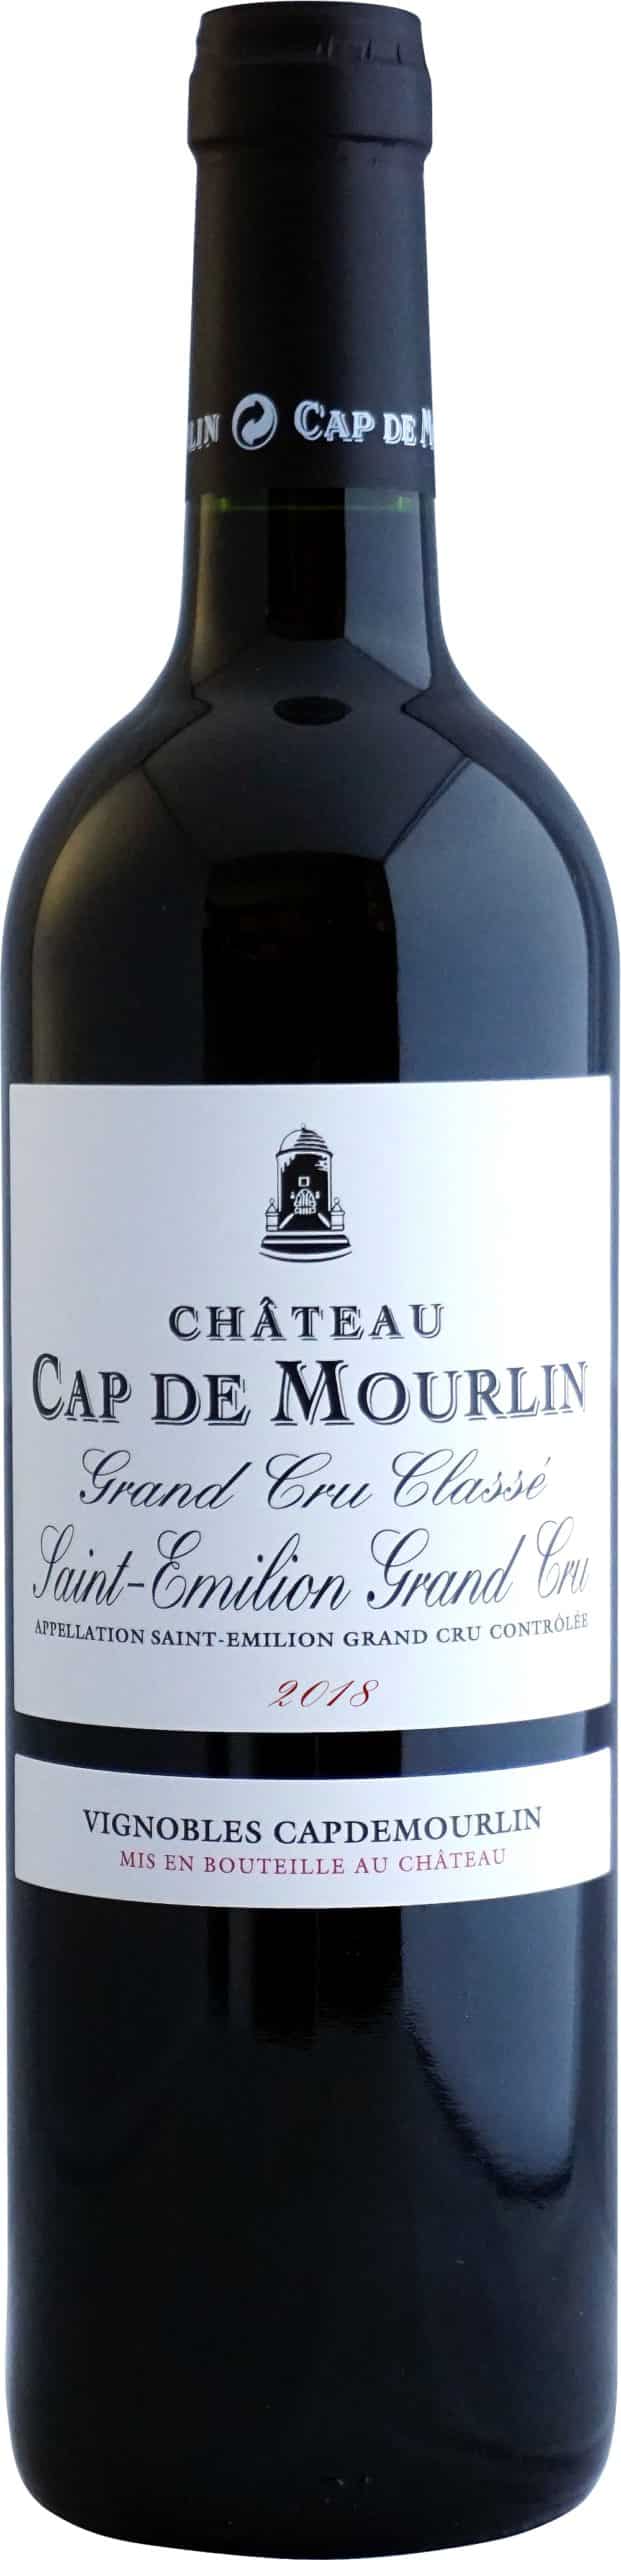 étiquette bouteille de vin Cap deMourlin